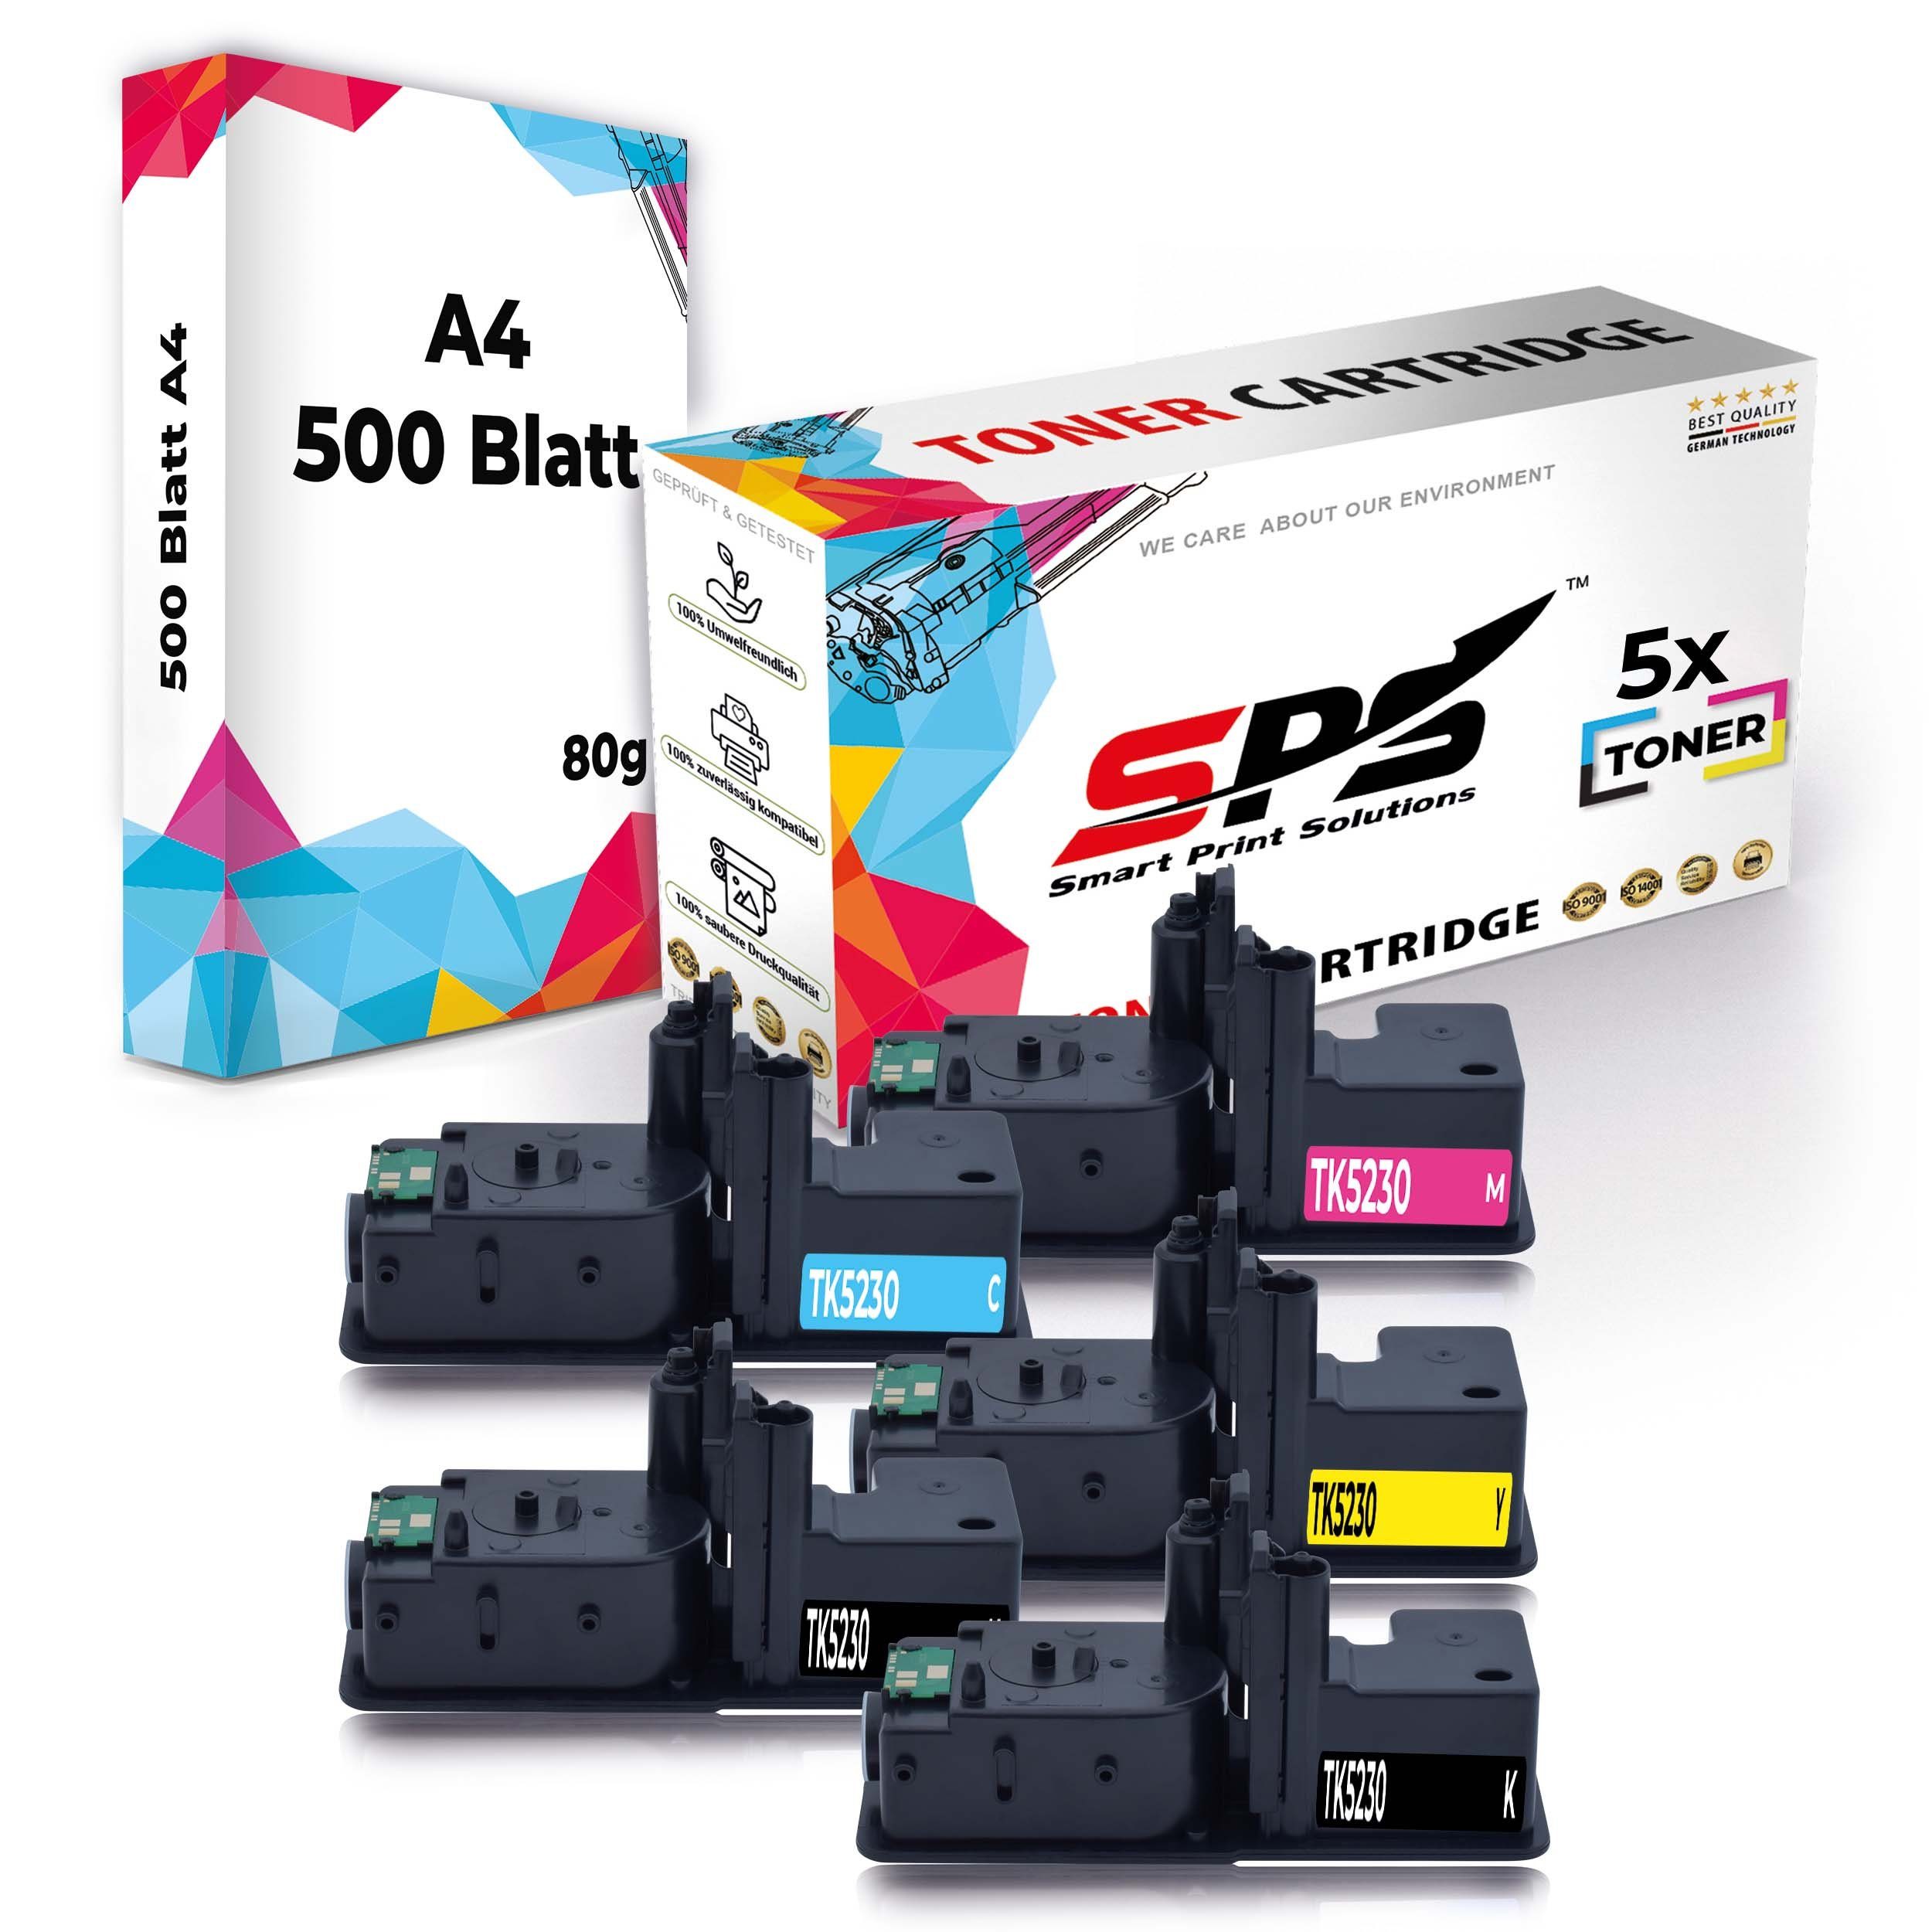 (6er ECOSYS Set Tonerkartusche P, Druckerpapier + SPS für 5x Kyocera Pack) Kompatibel A4 Multipack